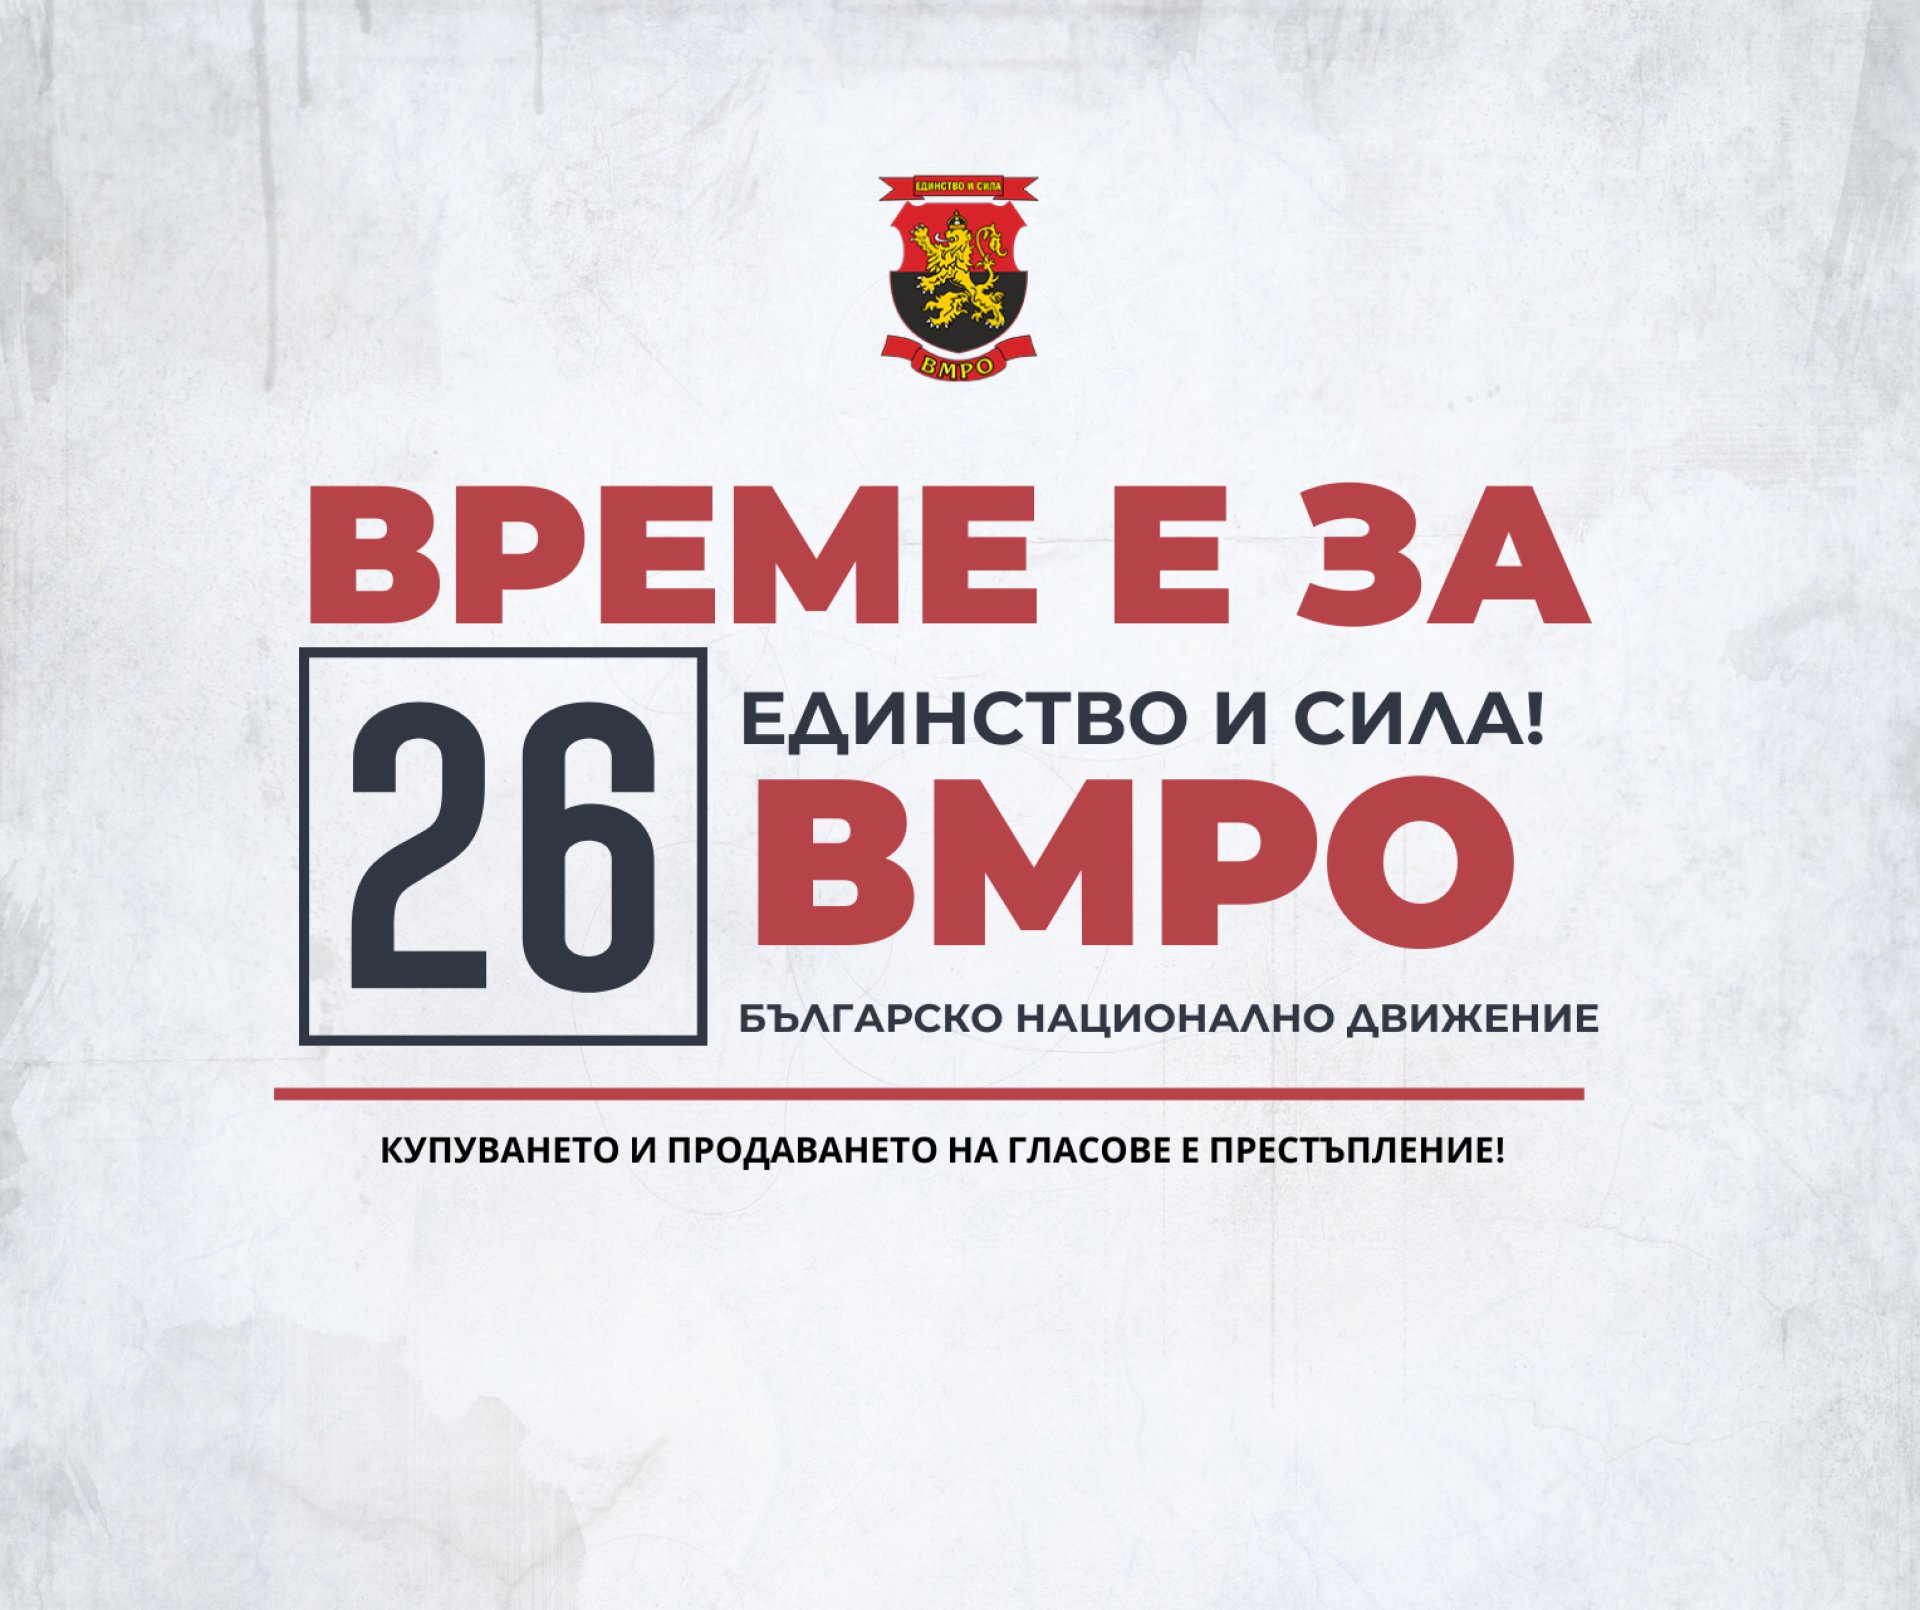 ВМРО: Десет проблема - десет решения, които ние от ВМРО поставяме на масата